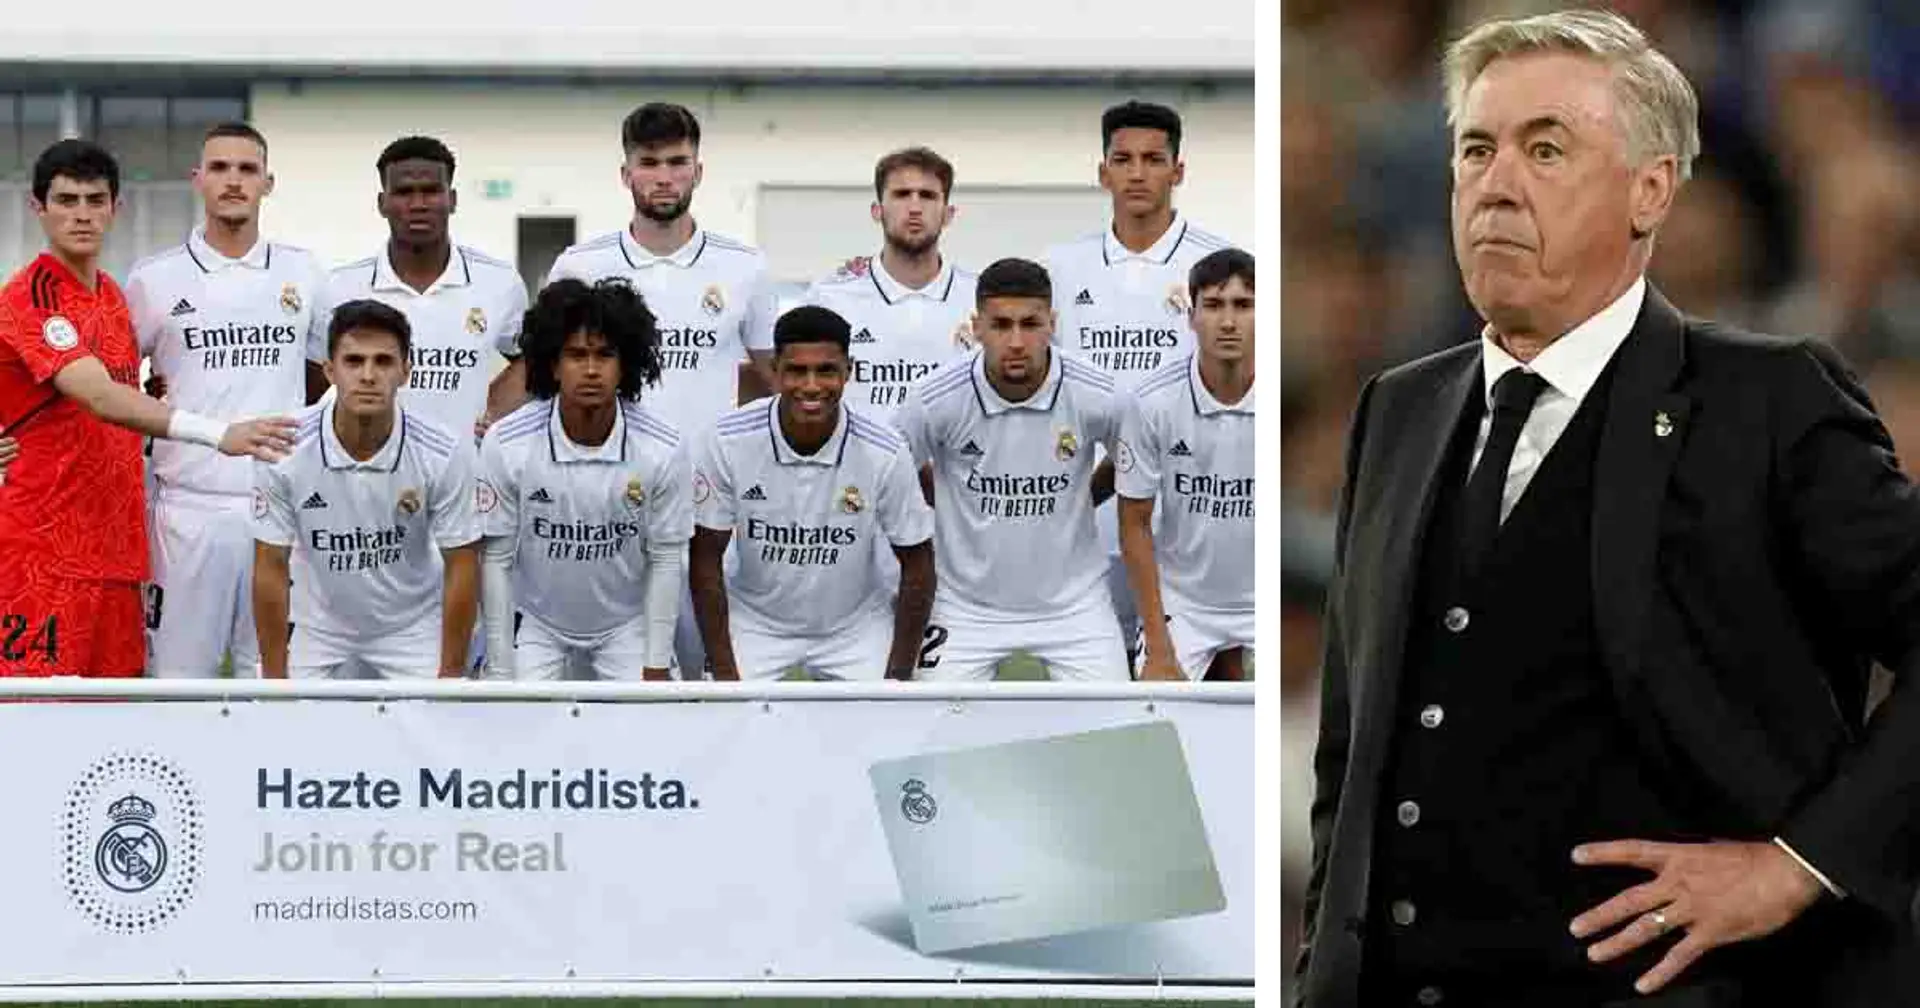 Real Madrid ist bereit, in der nächsten Saison einen Castilla-Star in die erste Mannschaft zu befördern